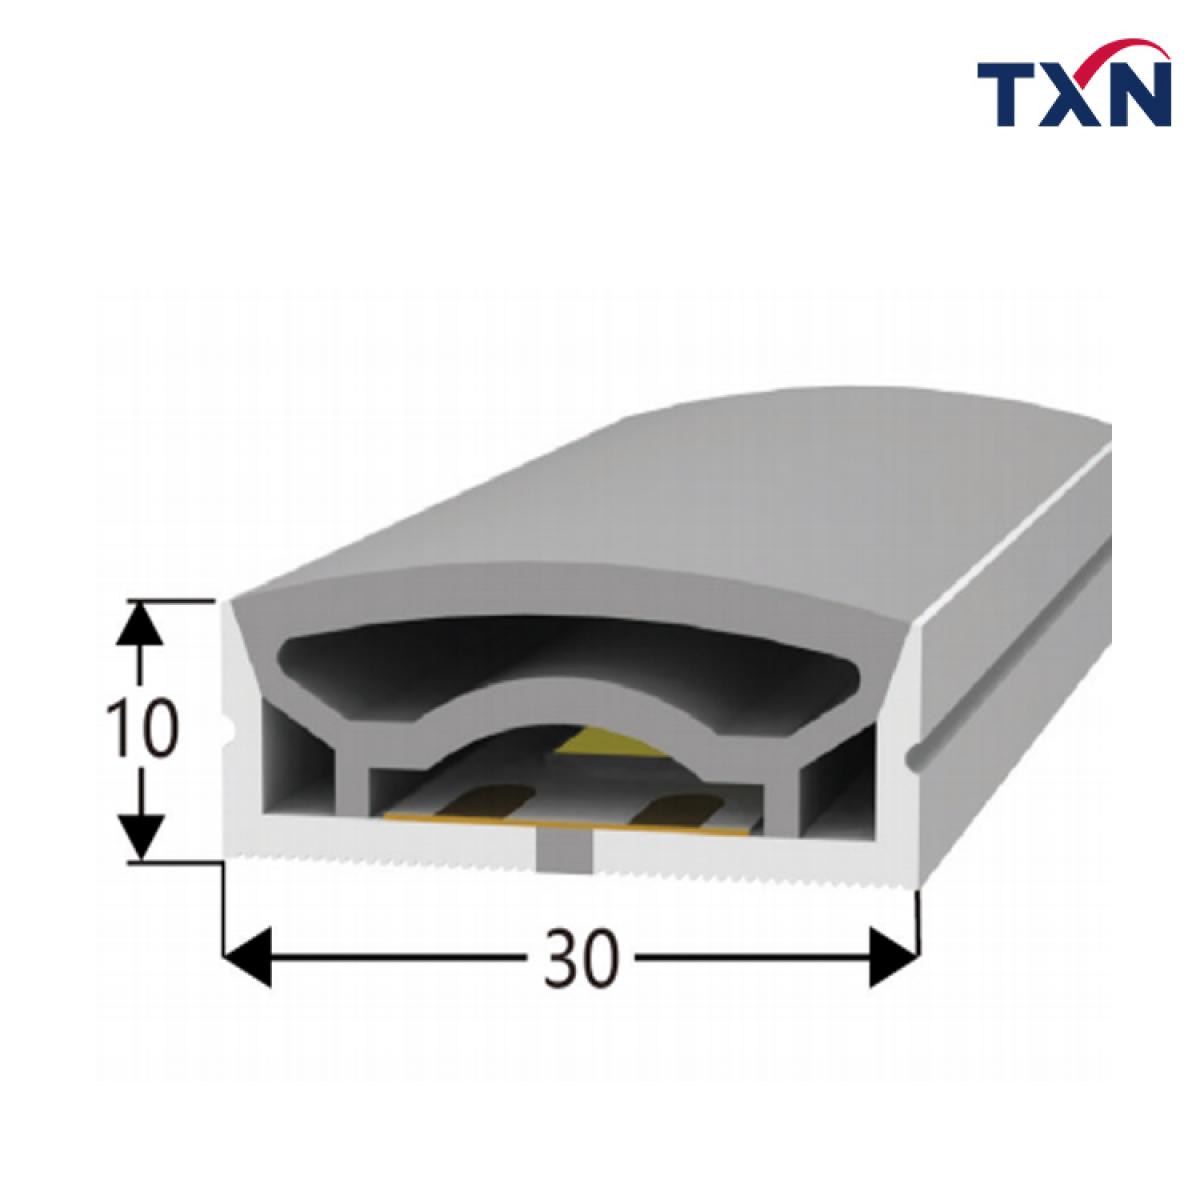 TXN-1030 10X30MM High Quality LED Neon Light